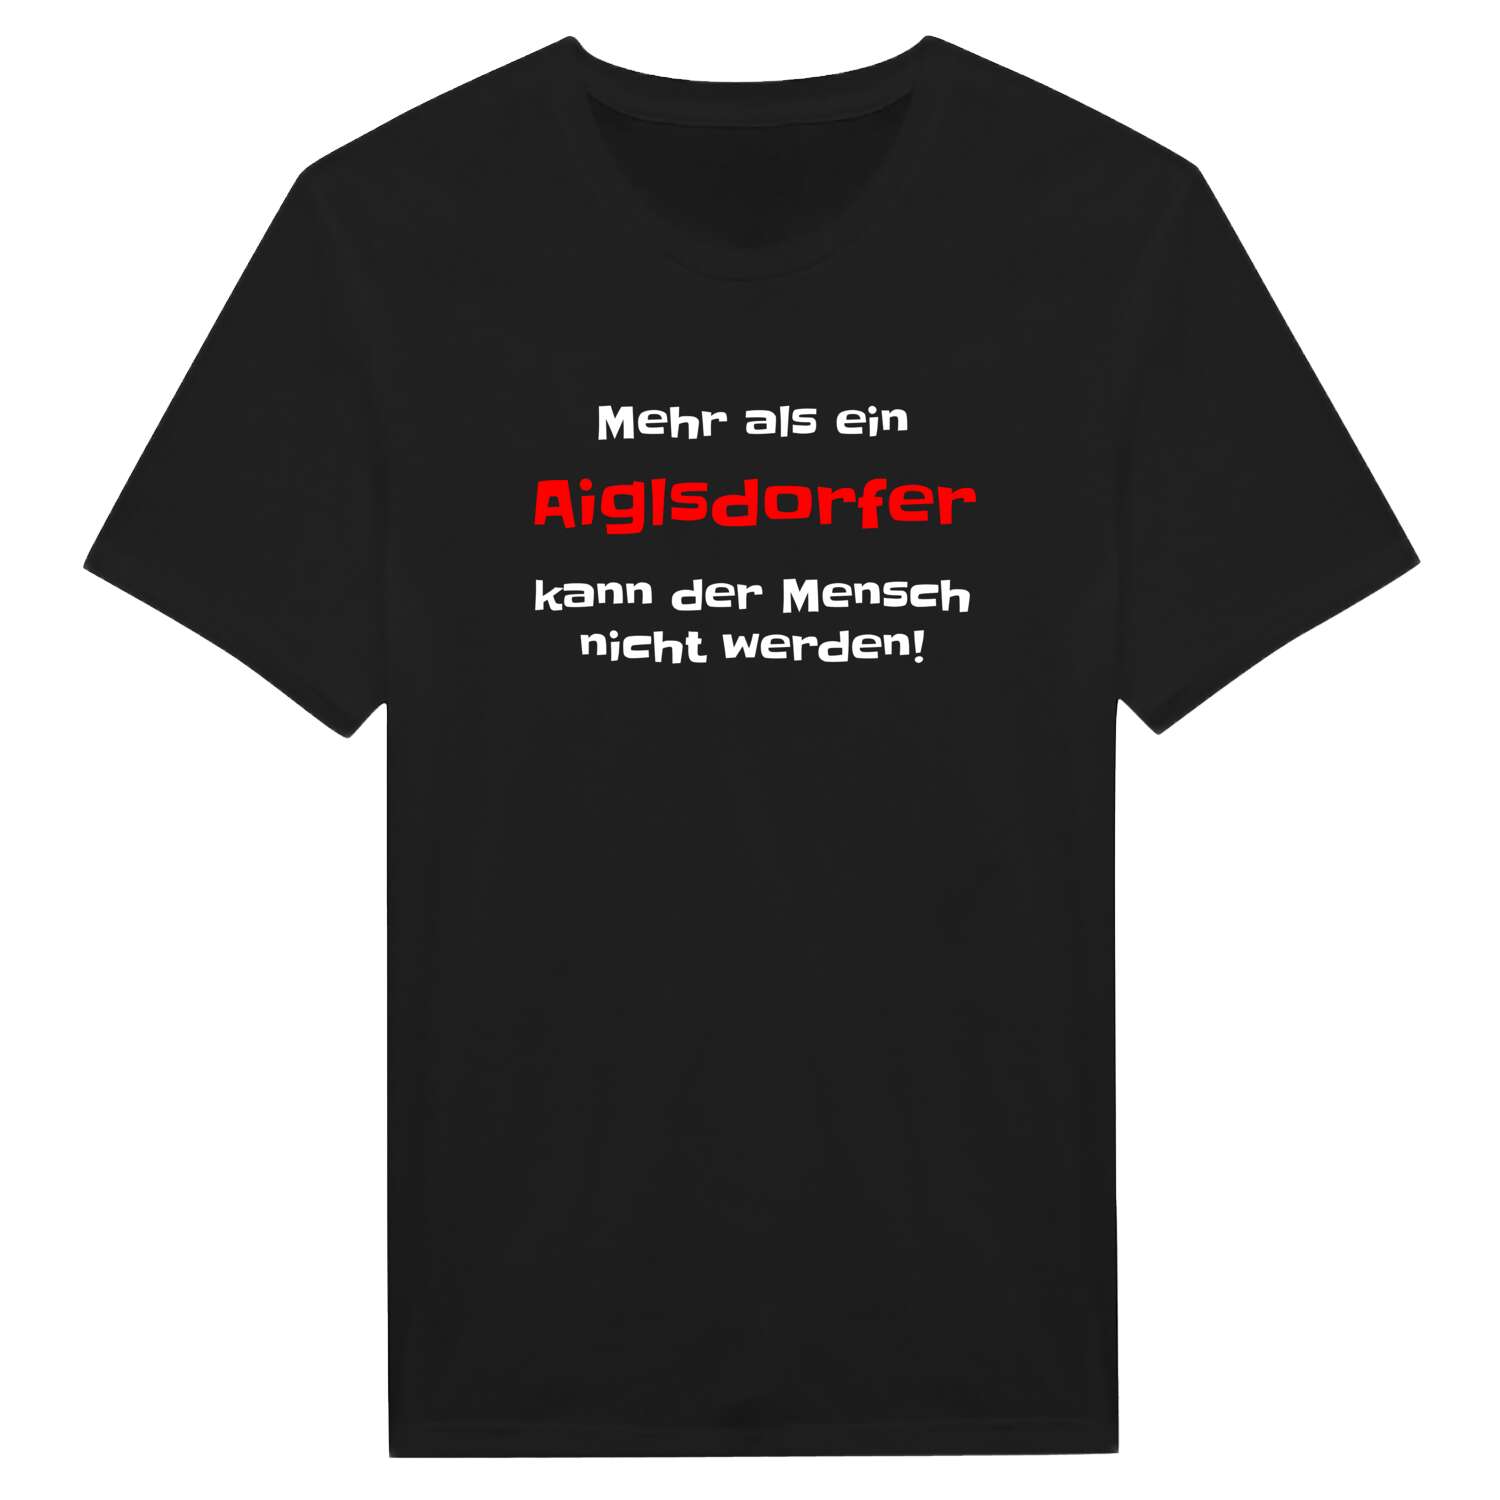 Aiglsdorf T-Shirt »Mehr als ein«